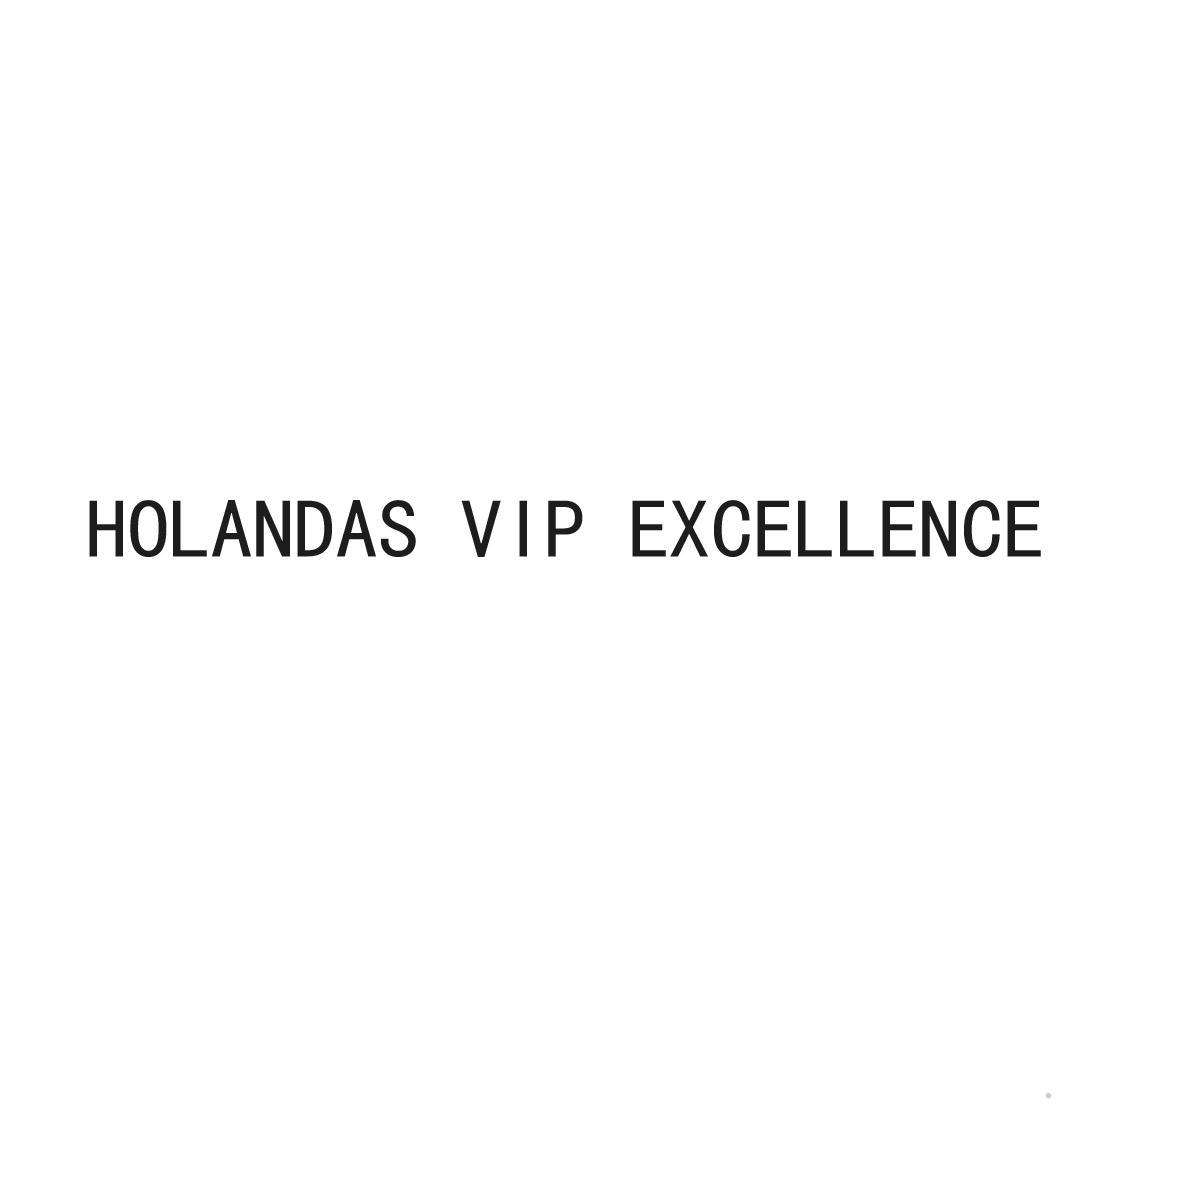 HOLANDAS VIP EXCELLENCE